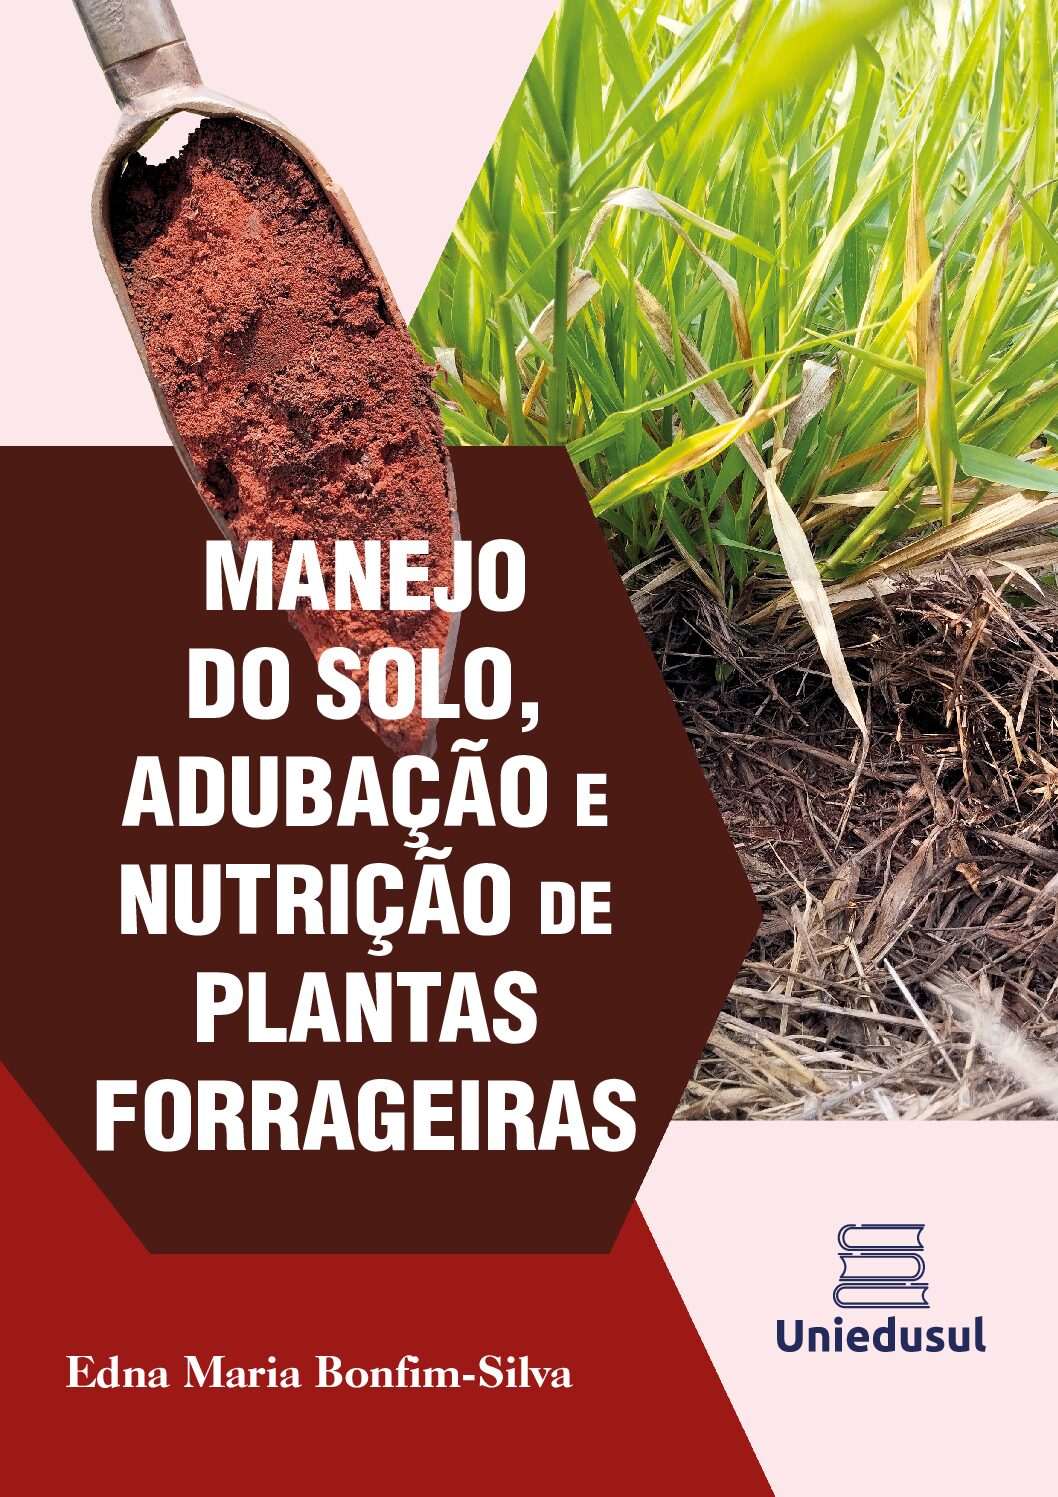 Manejo do solo, adubação e nutrição de plantas forrageiras